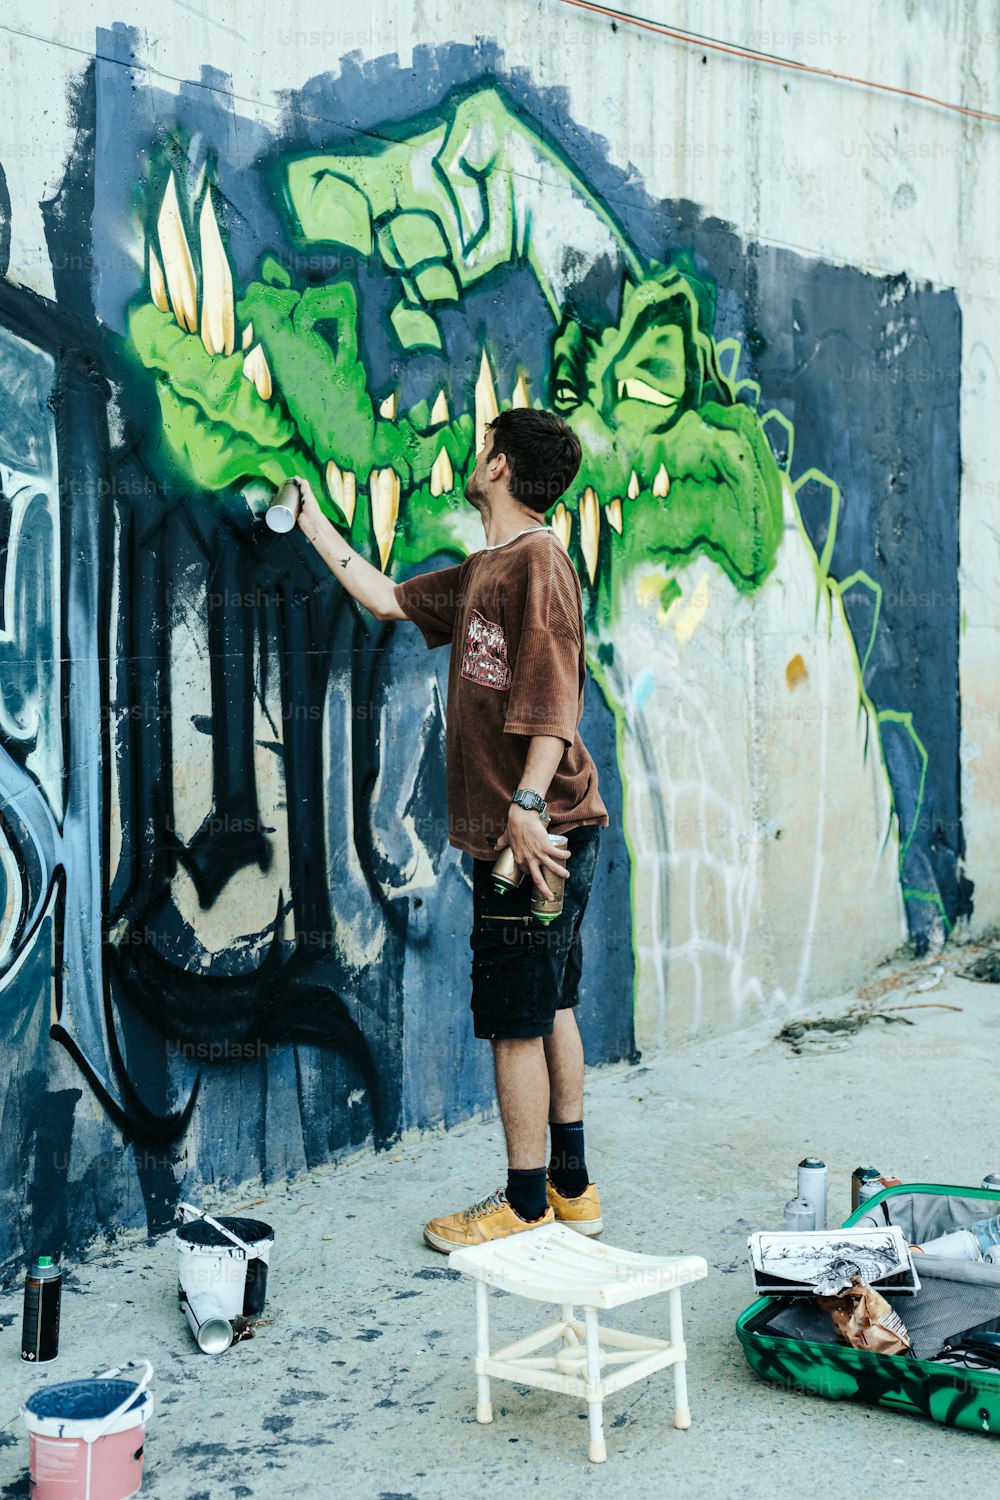 Un uomo sta dipingendo un muro con graffiti